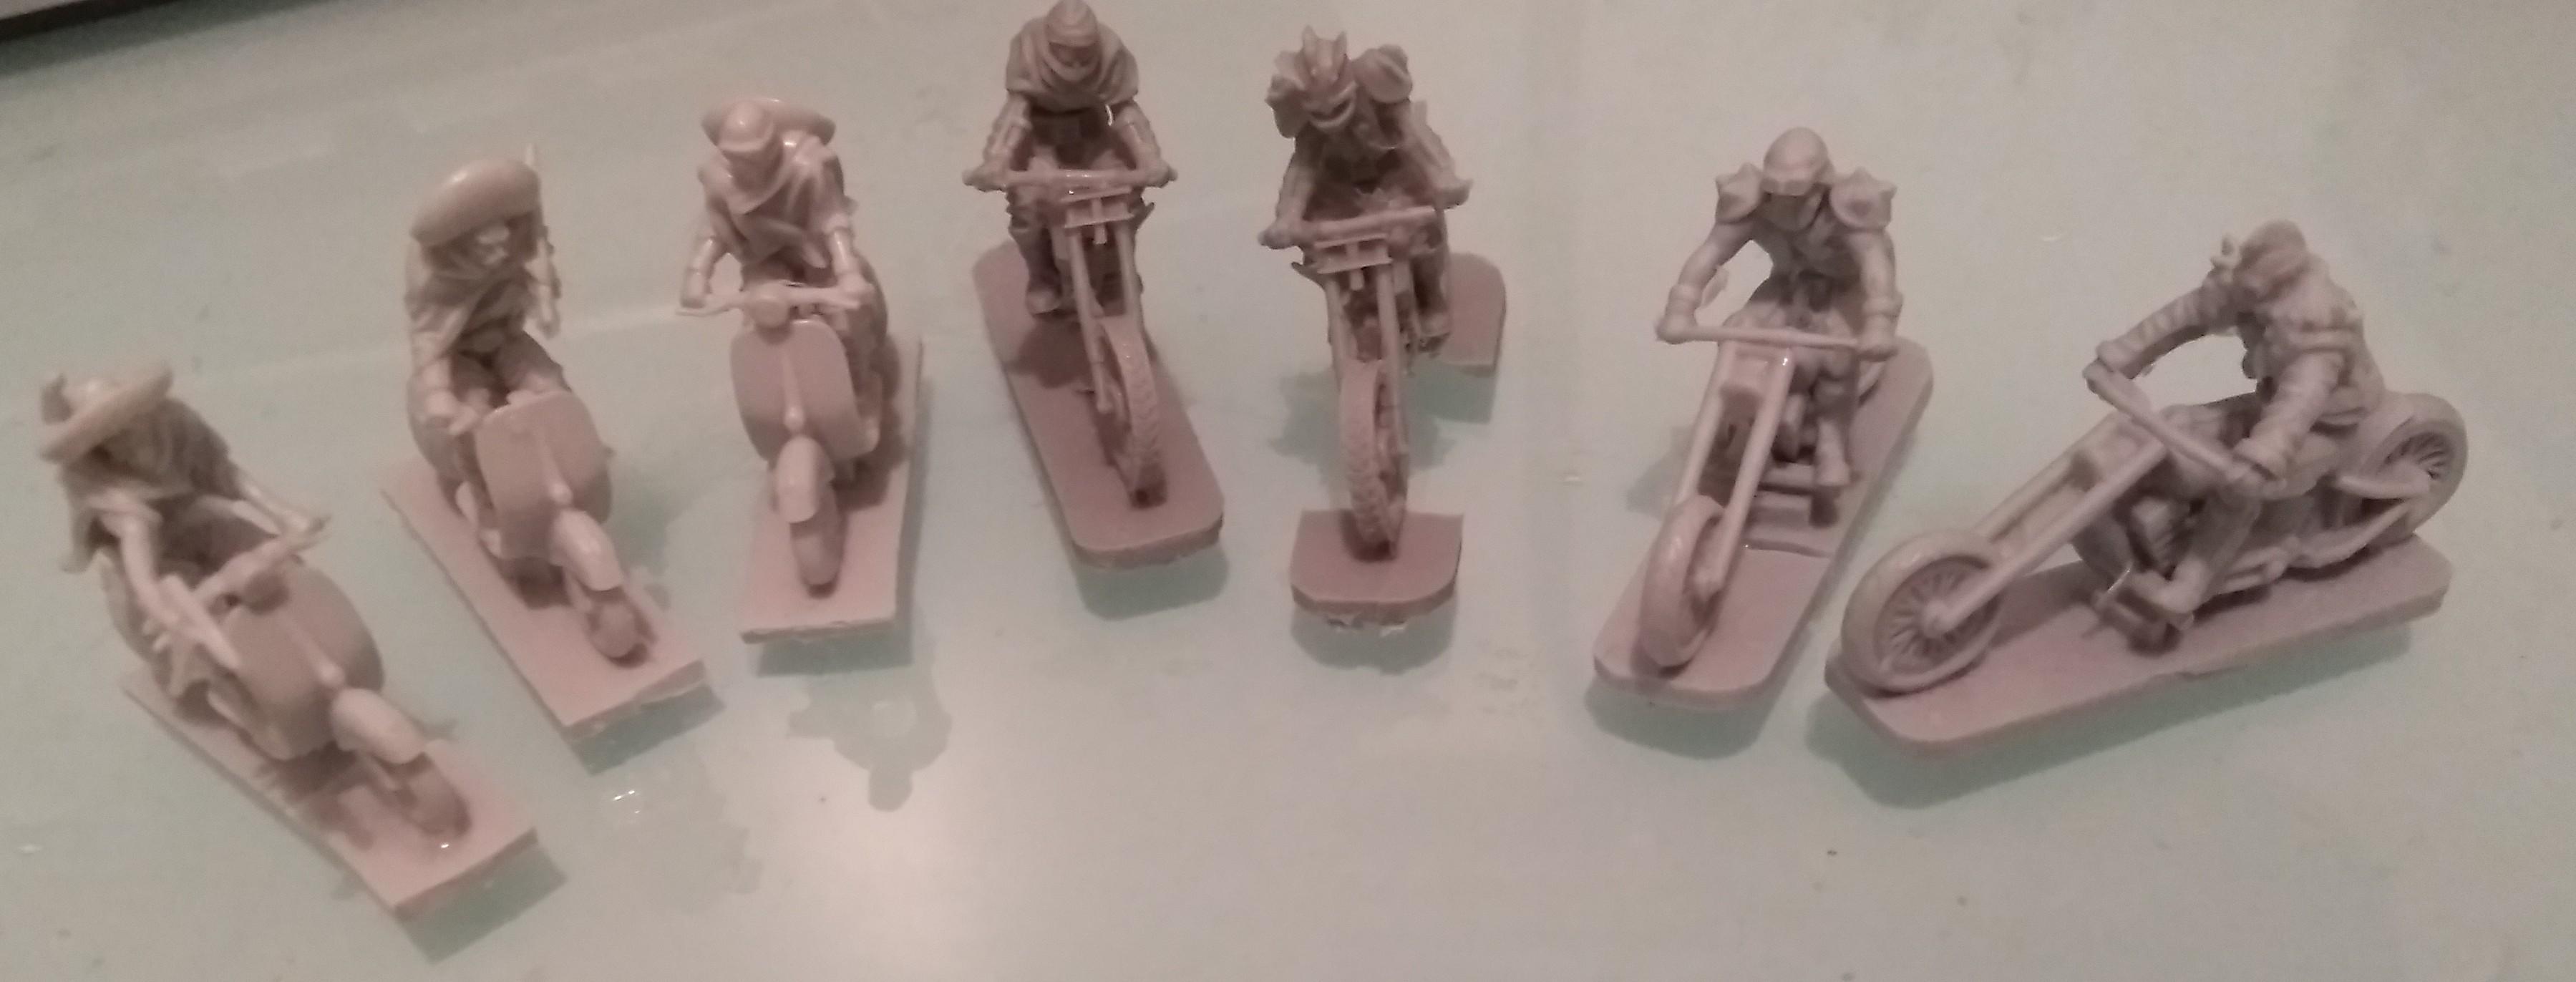 Biker gangs for Mars!